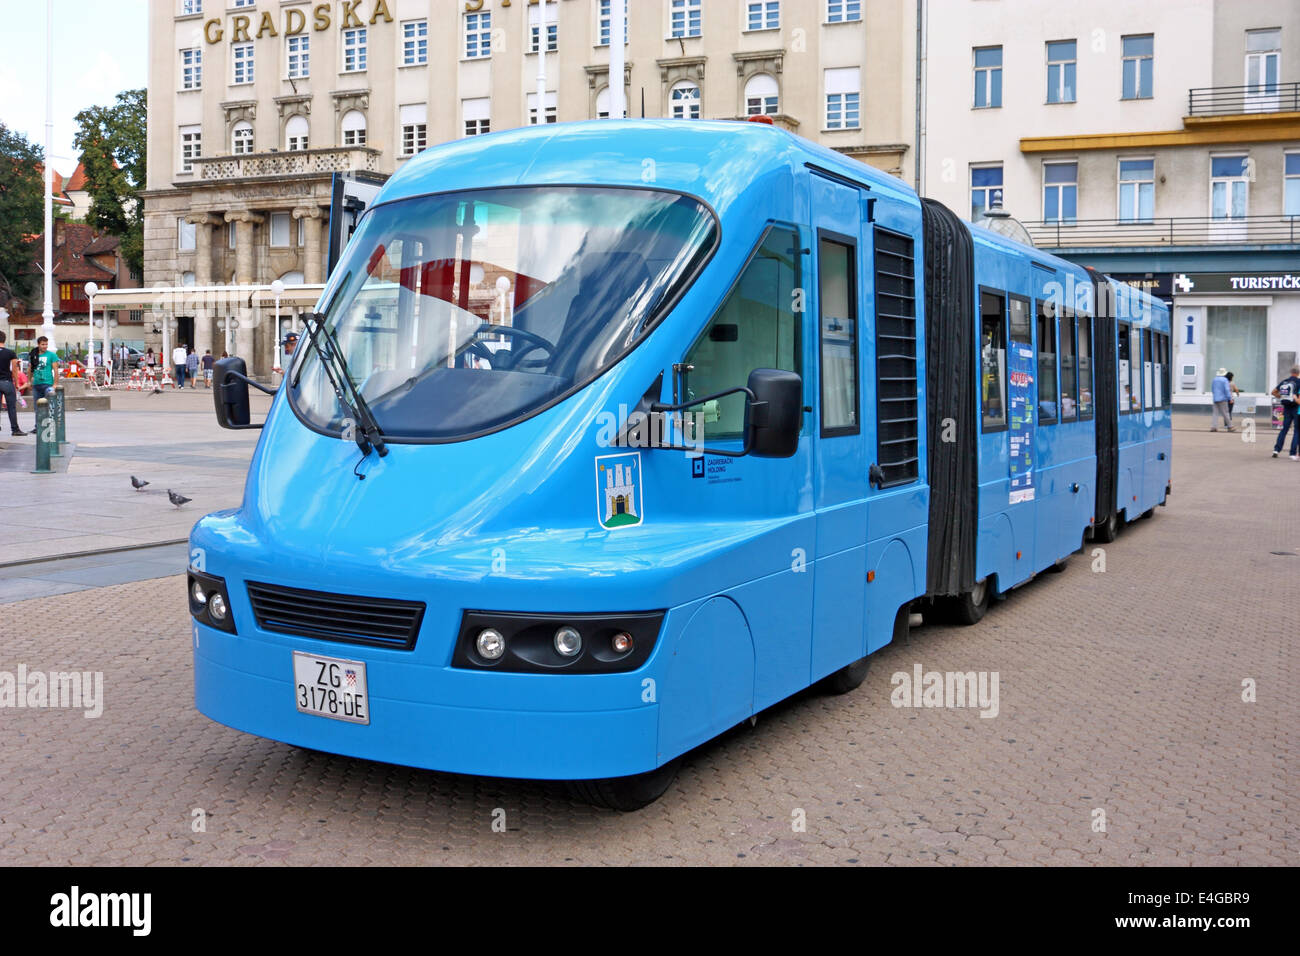 Touristischen Zug auf dem Ban Jelacic-Platz, Zagreb, Kroatien Stockfoto